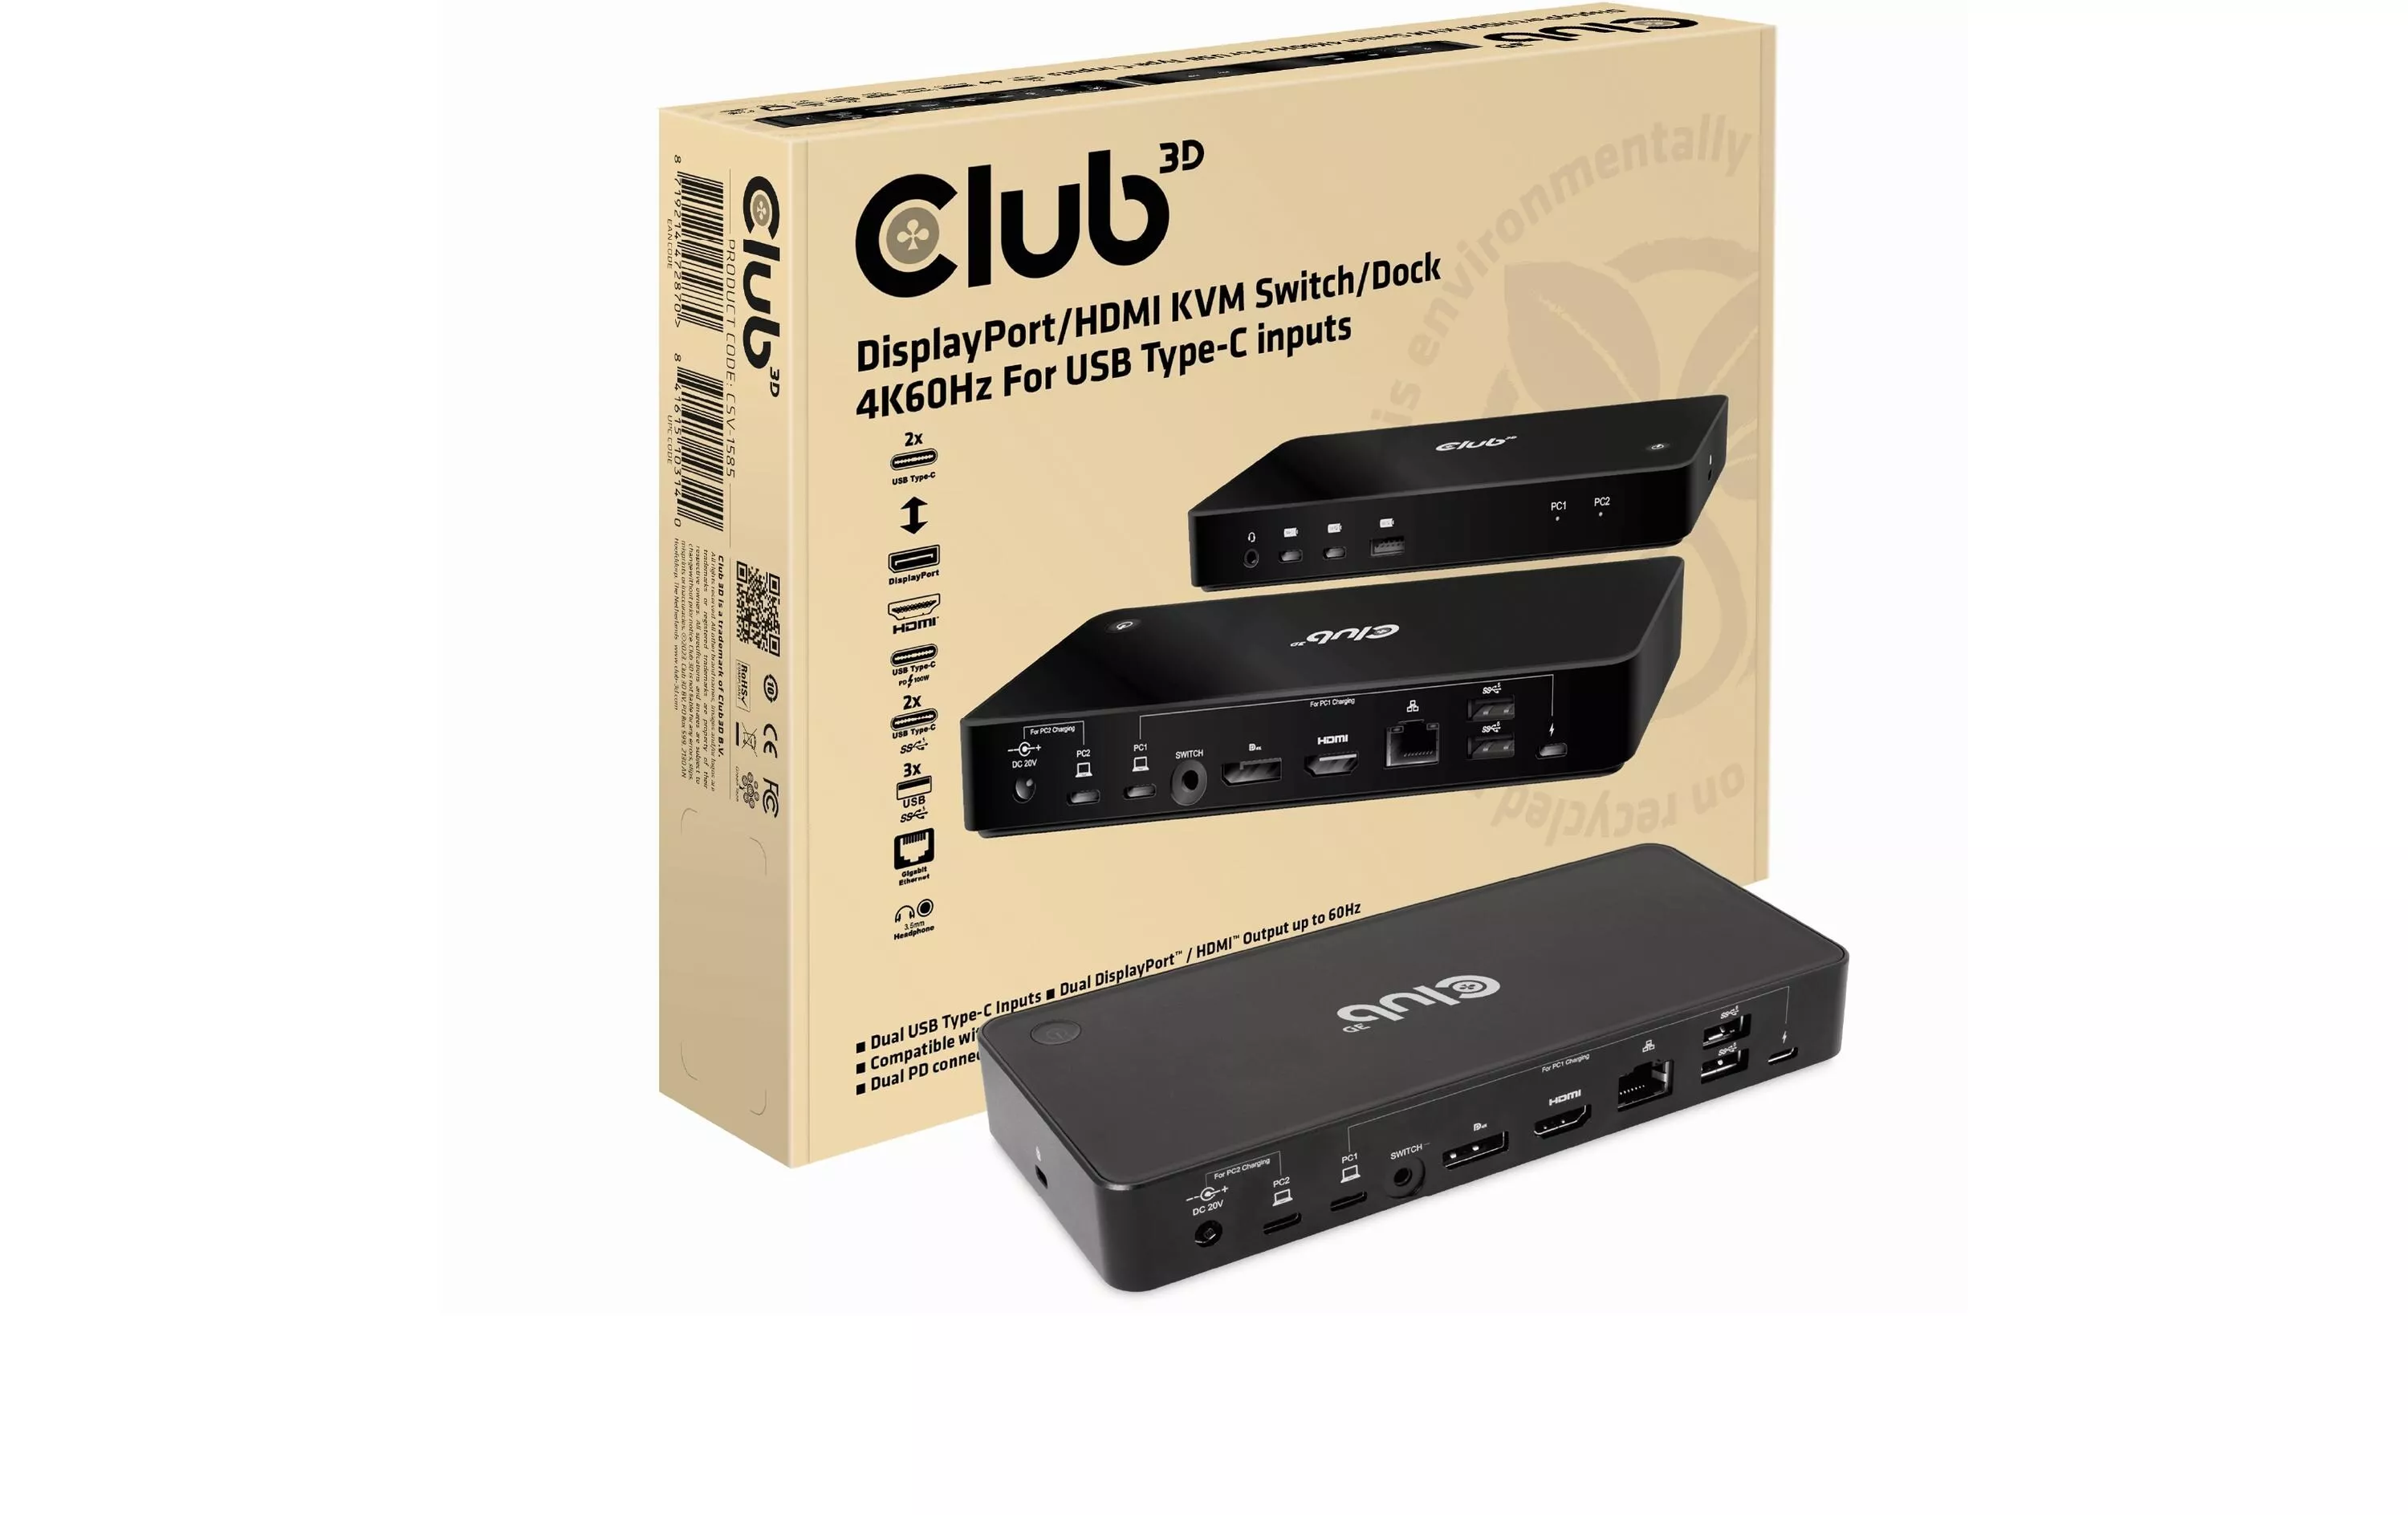 Stazione docking Club 3D CSV-1585 DisplayPort/HDMI KVM